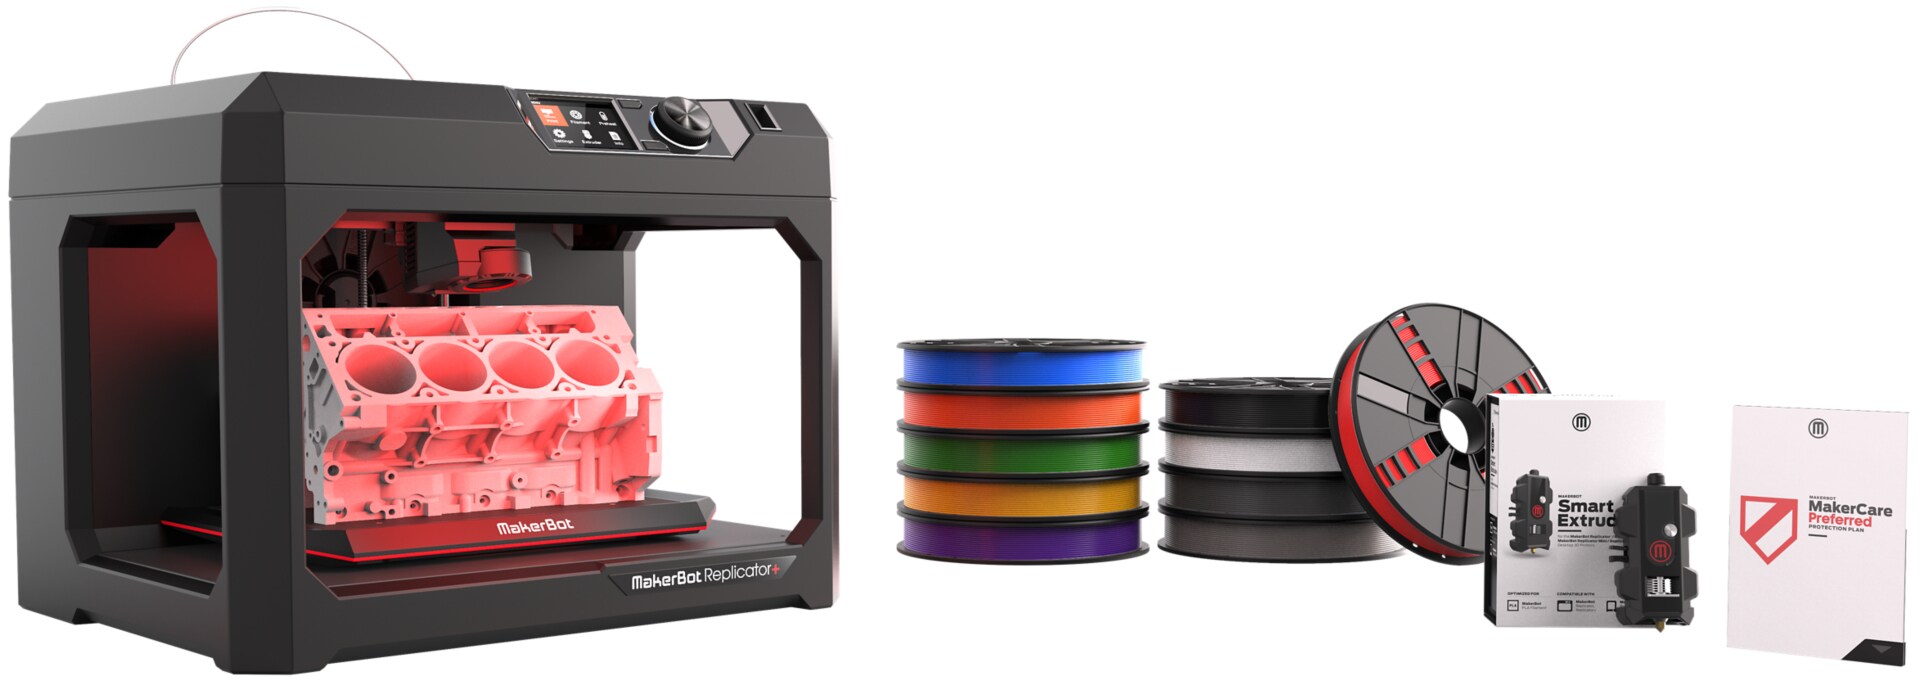 MakerBot Essentials Pack - MakerBot Replicator+, Smart Extruder+ - 3D printer